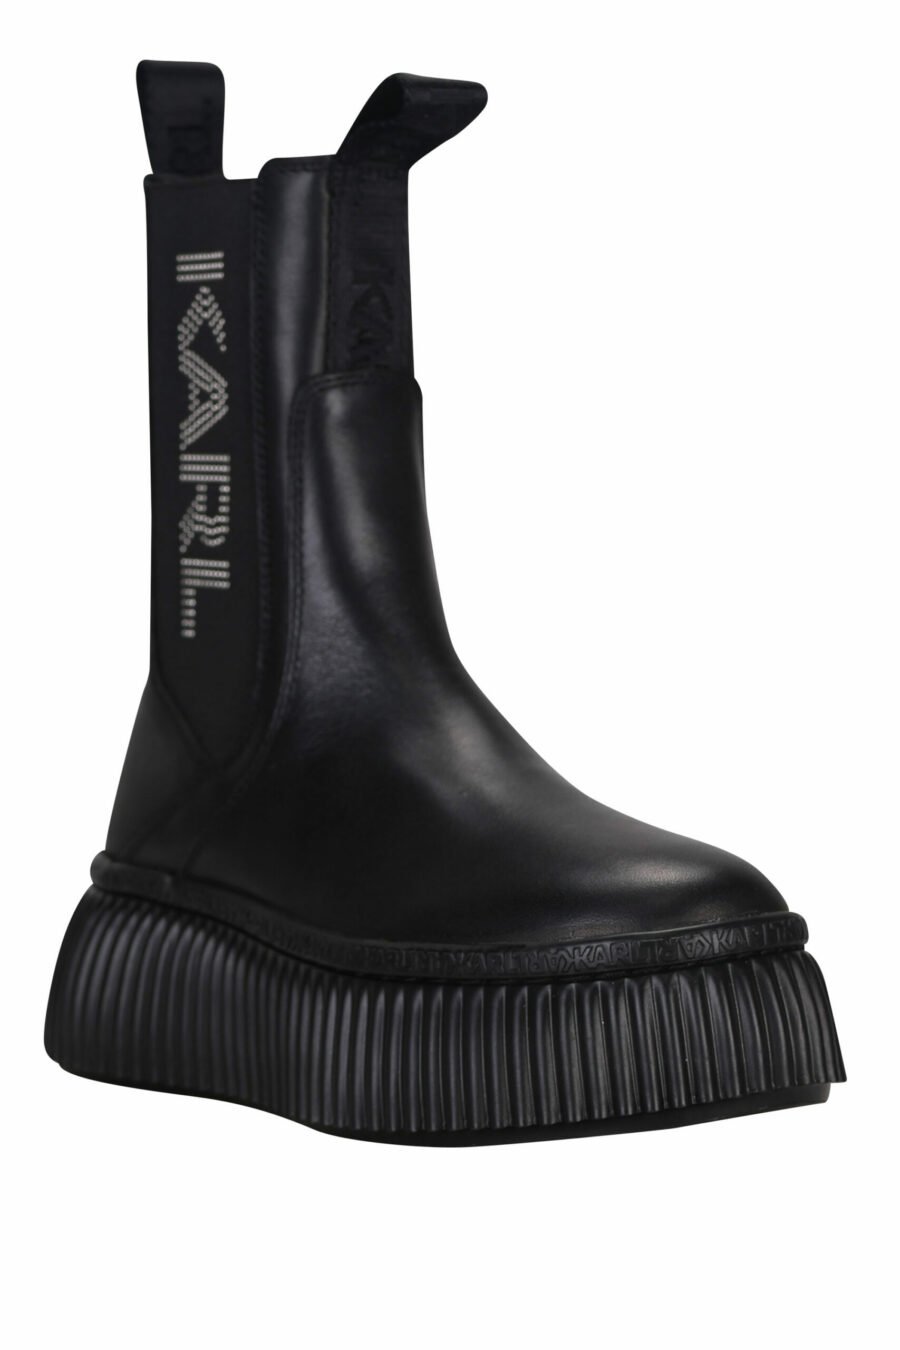 Schwarze Ankle Boots mit vertikalem Logo und Plateau - 5059529315176 1 skaliert